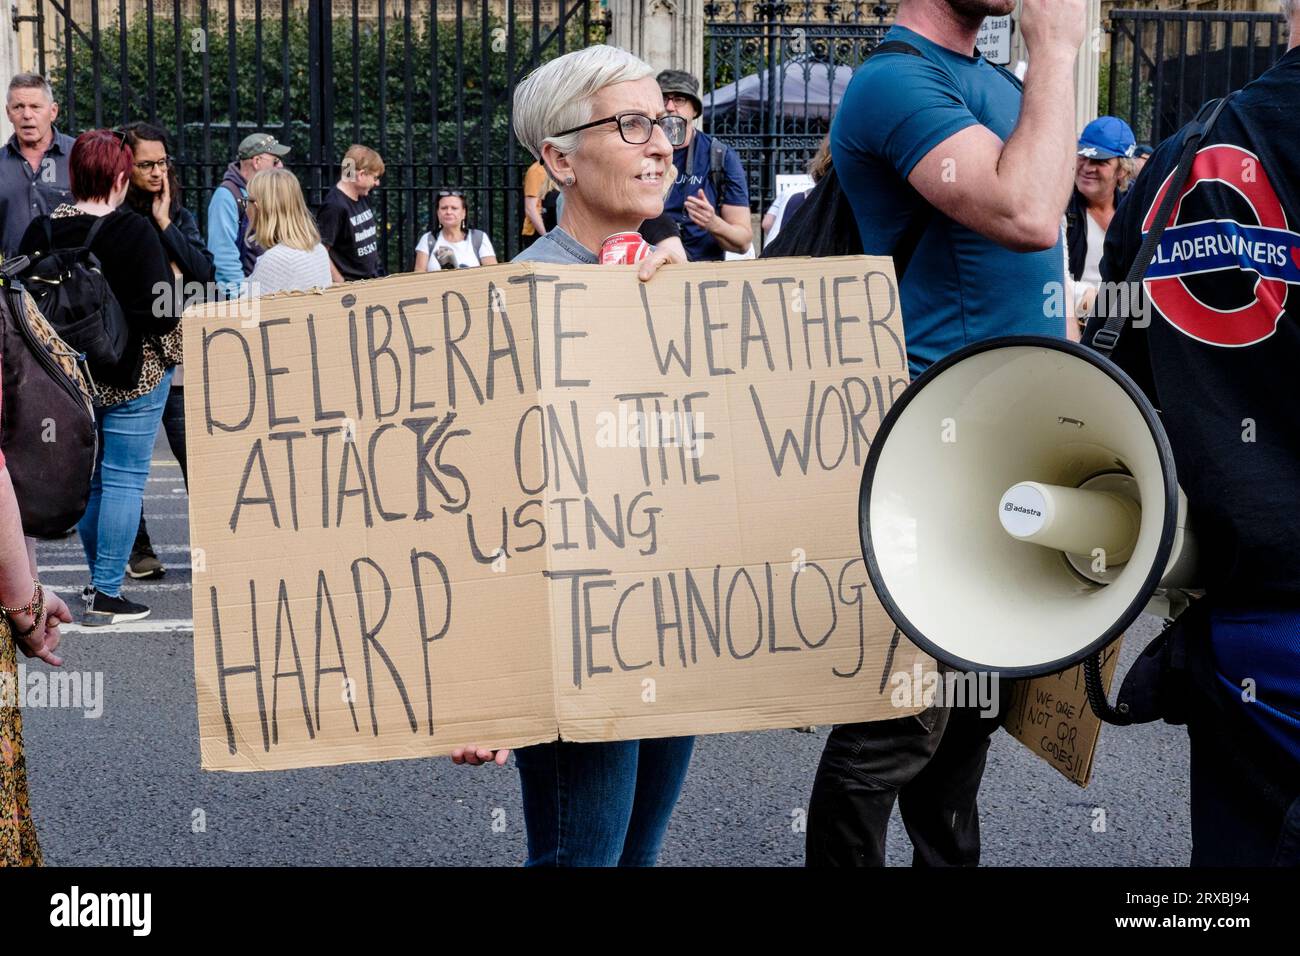 Une femme tient une pancarte affirmant que la technologie HAARP est utilisée pour manipuler les attaques météorologiques sur le monde. Londres Royaume-Uni. Banque D'Images